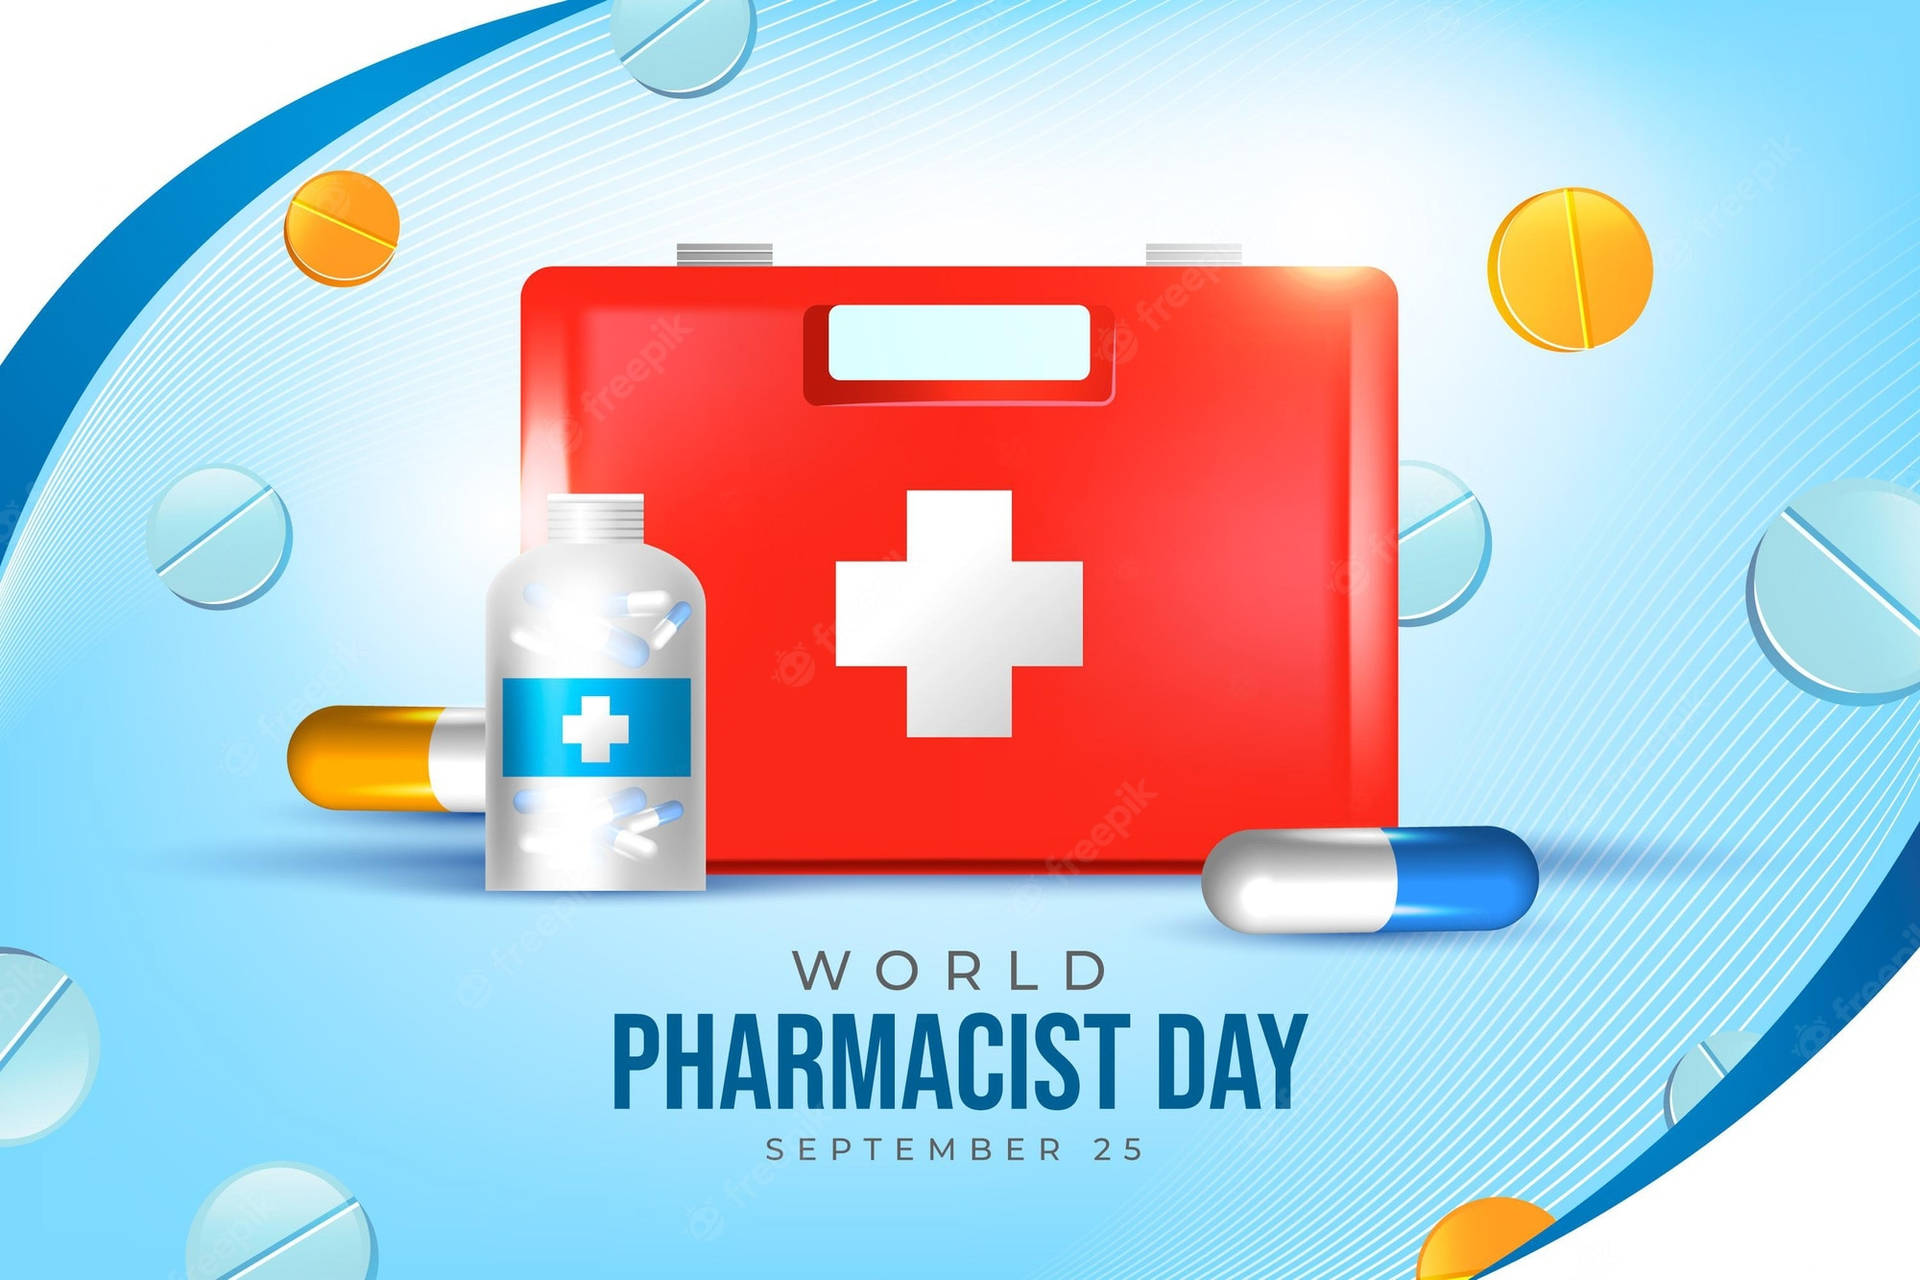 World Pharmacist Day September 25